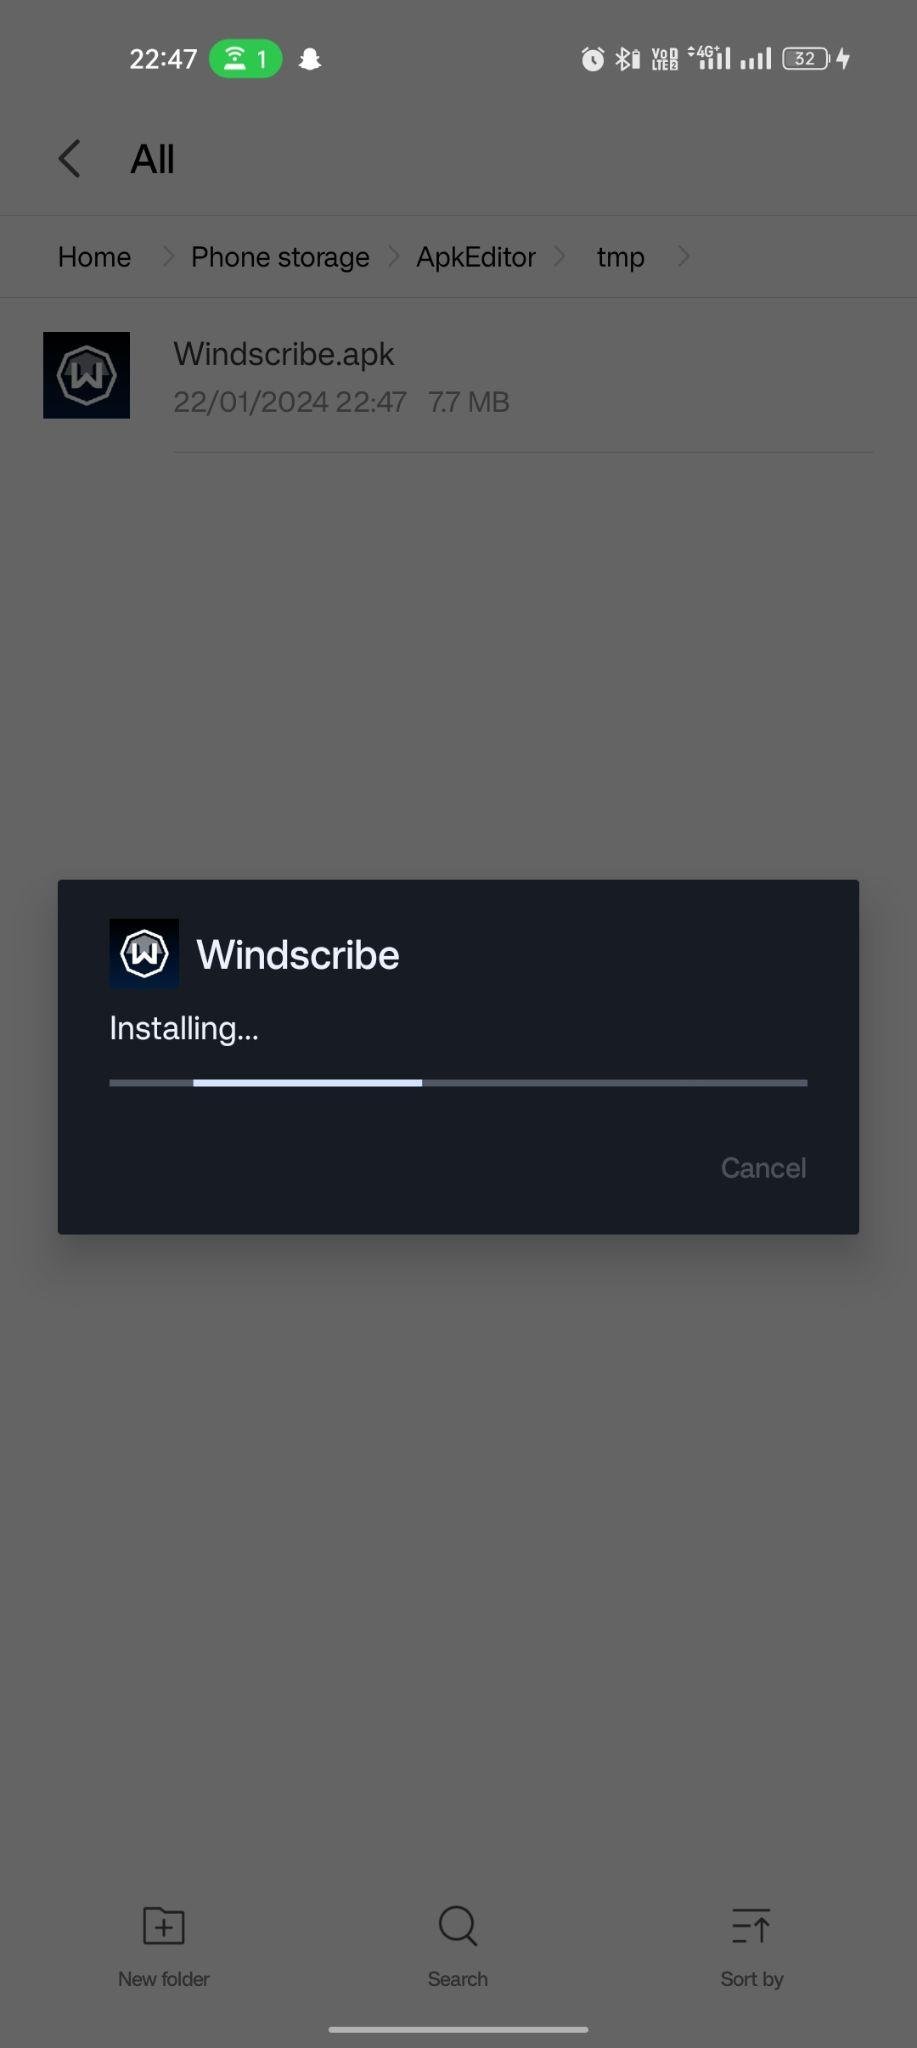 Windscribe apk installing